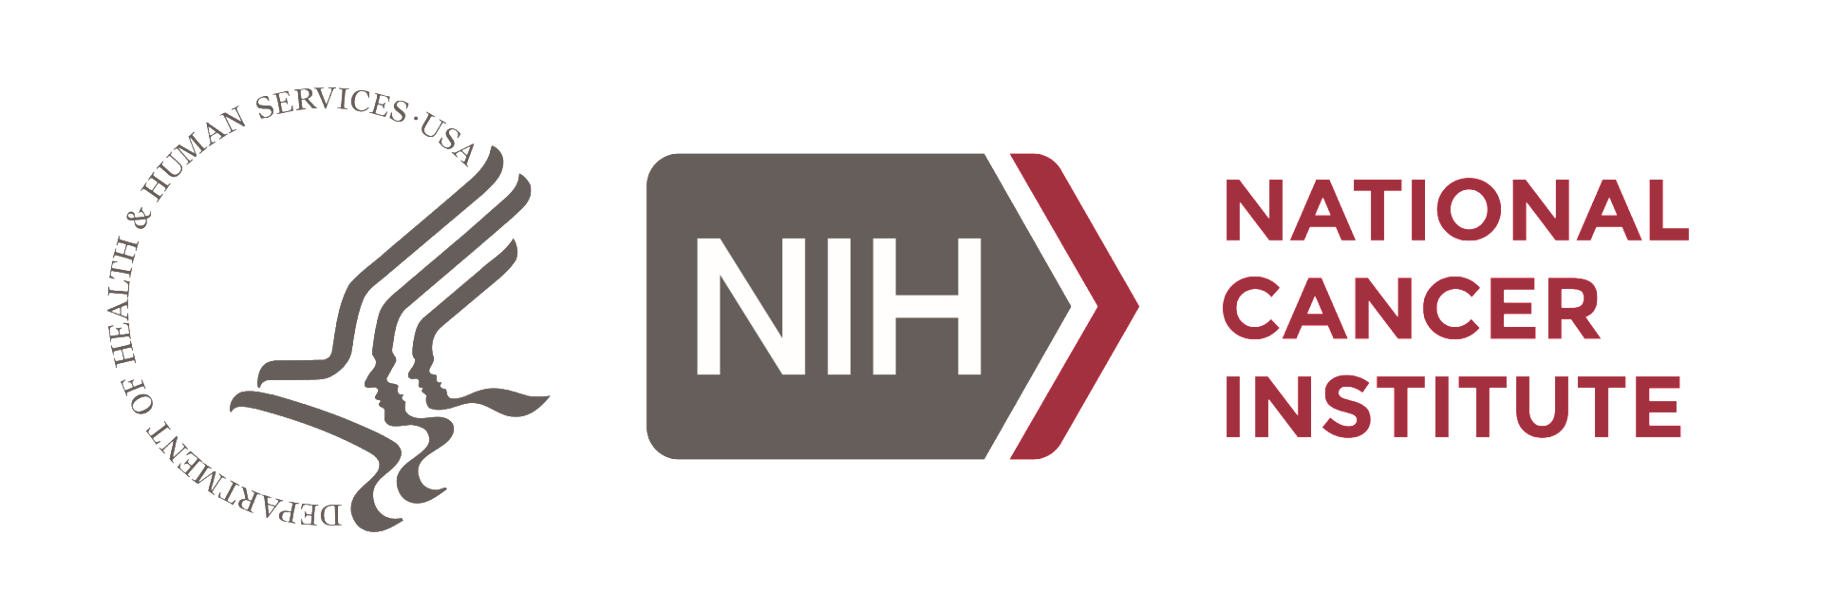 HHS_NIH_NCI_Logos